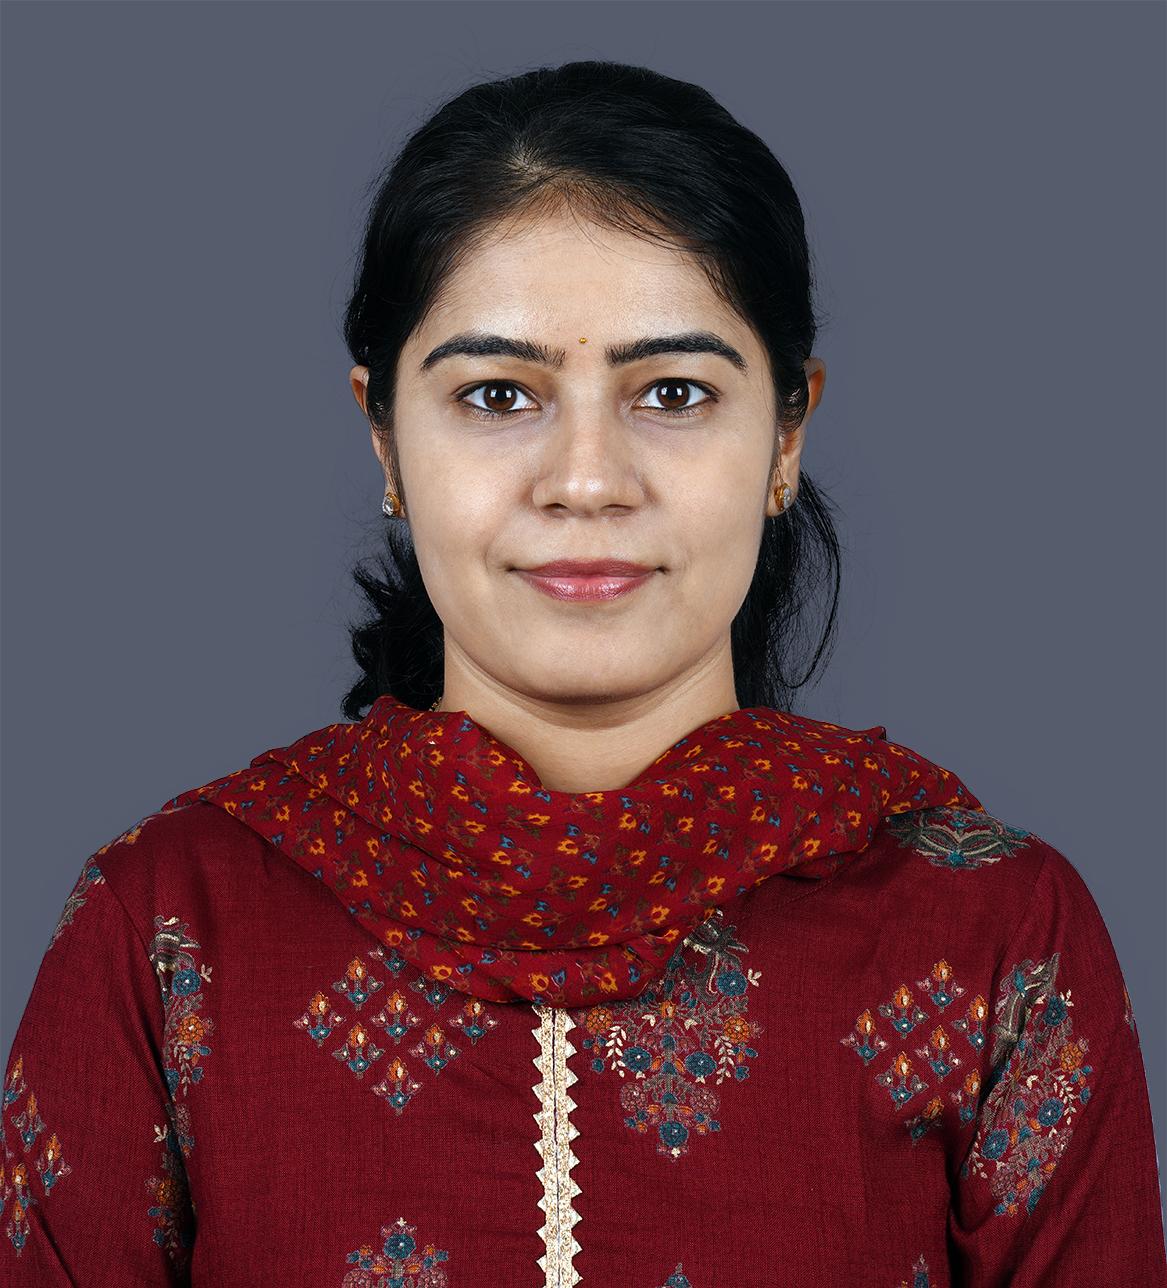 Dr. Meghana Prabhu S